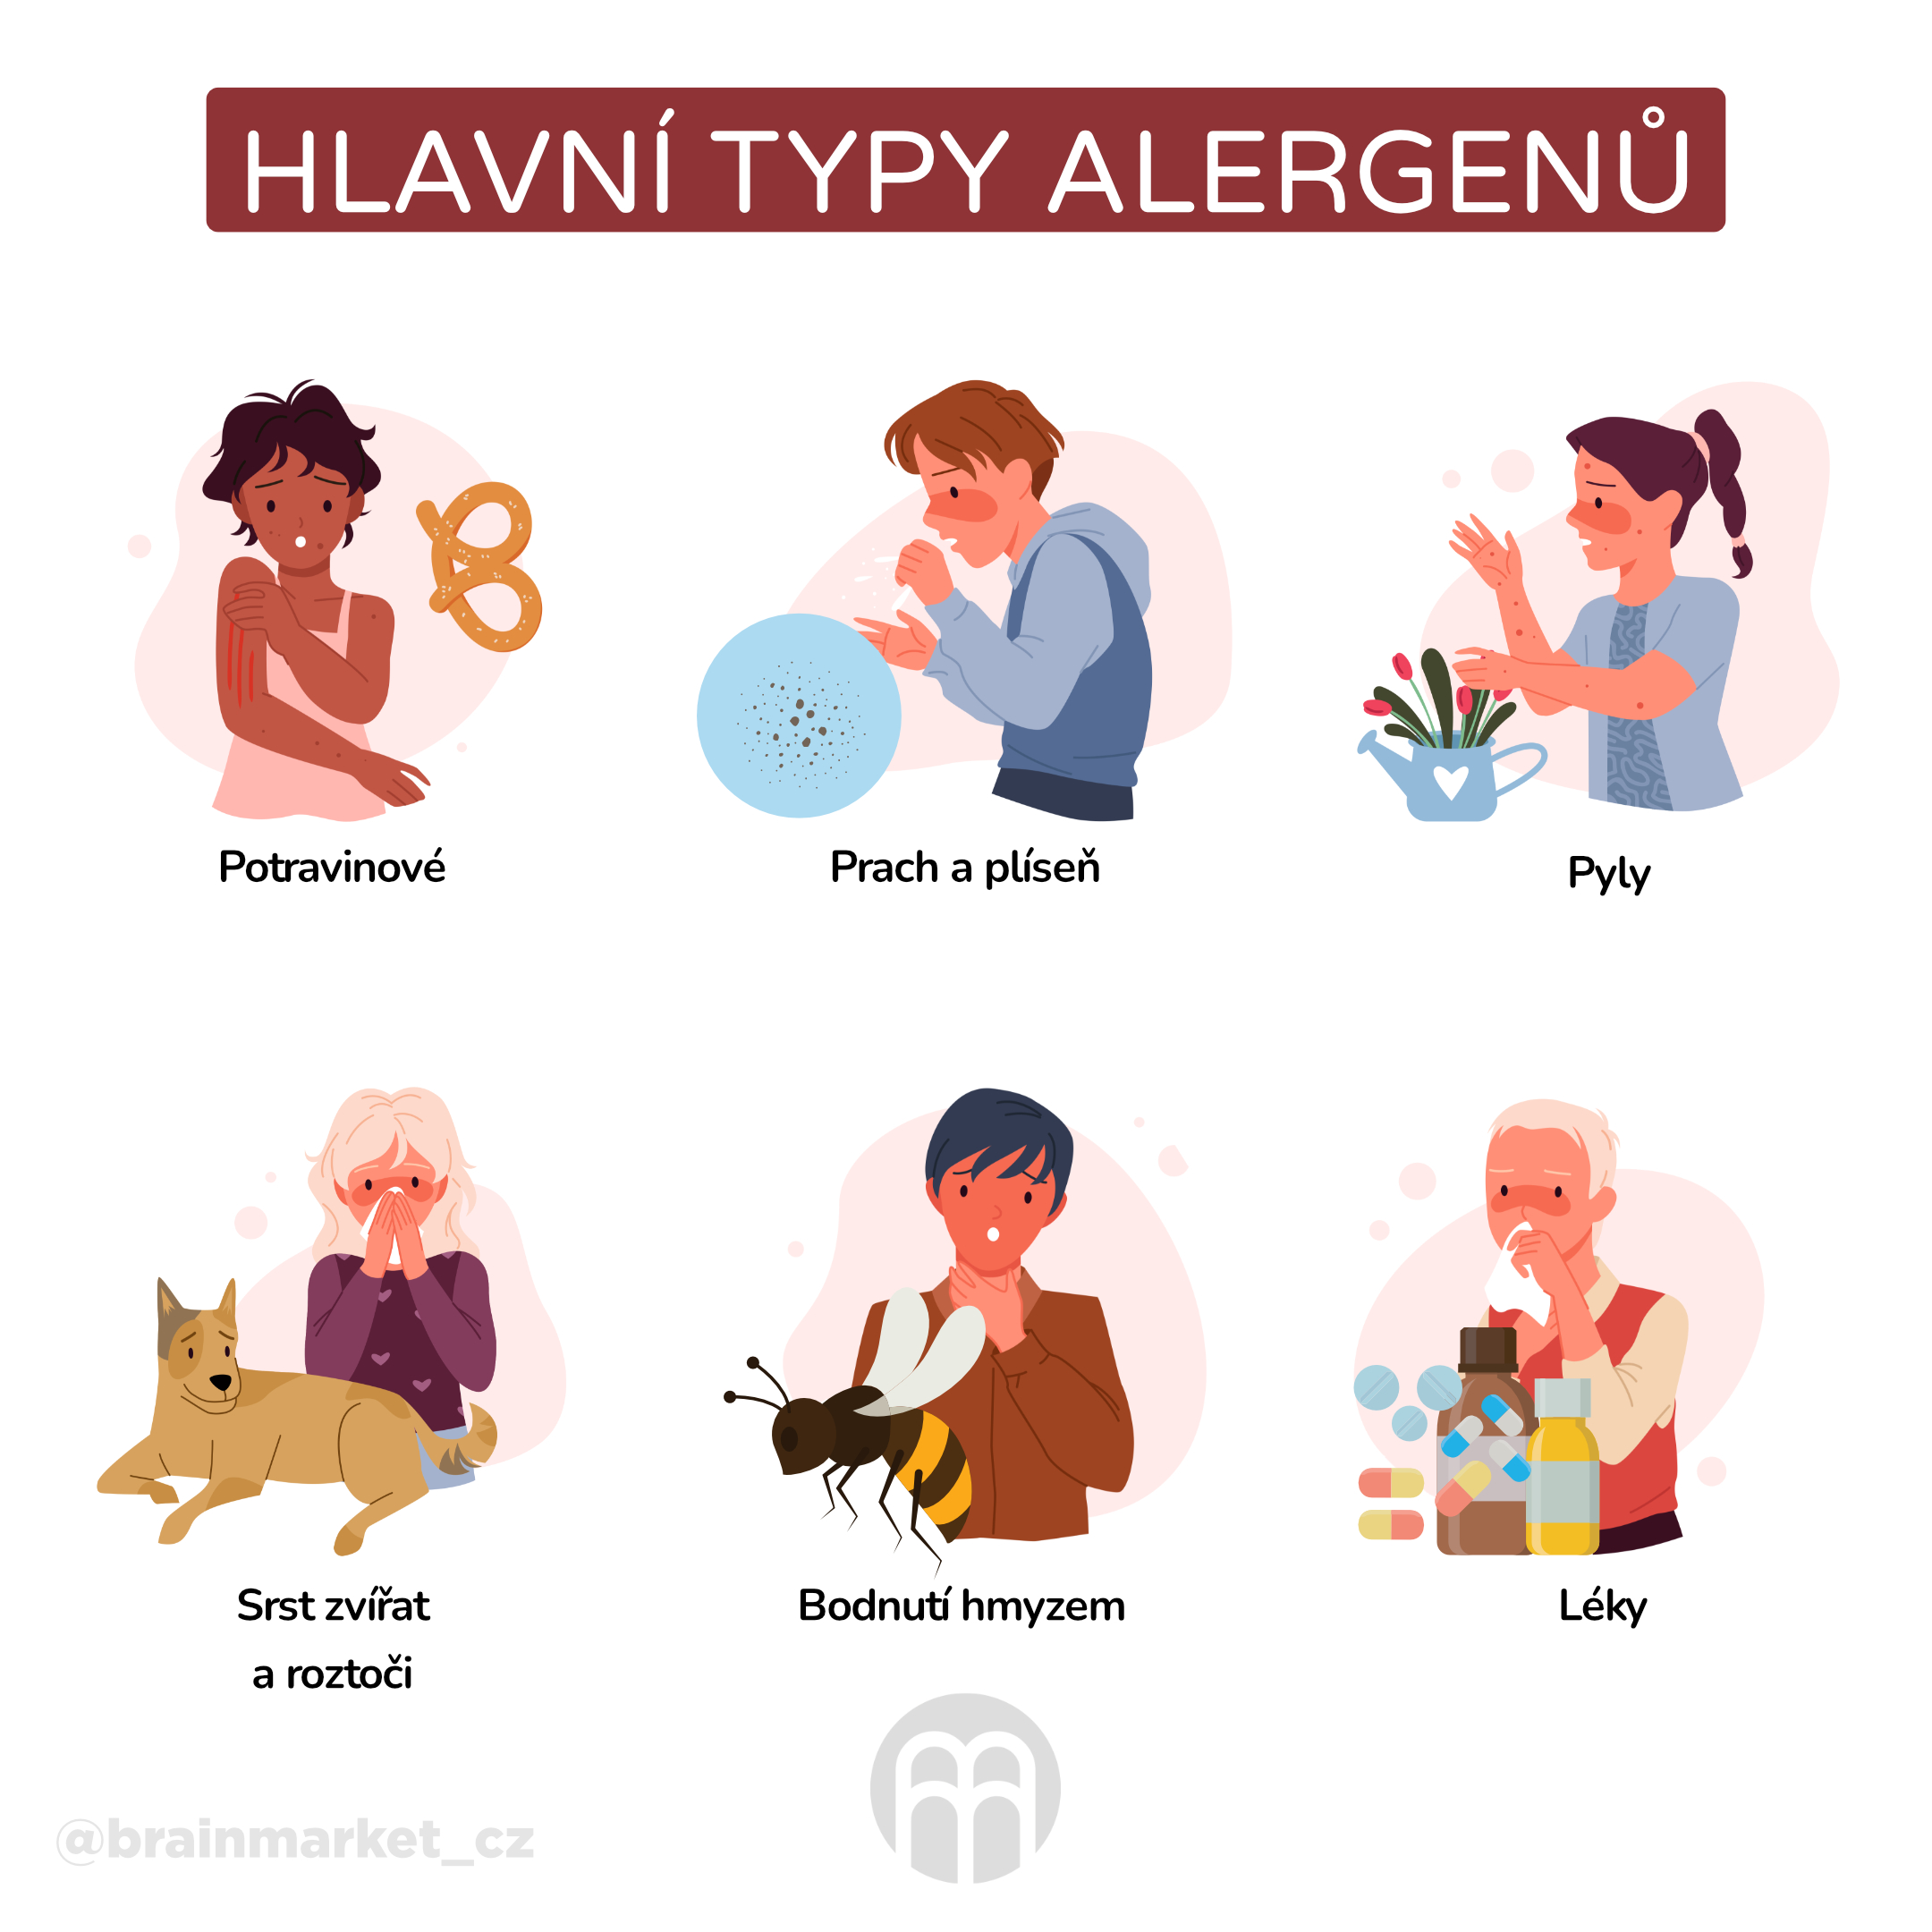 Na co může být člověk alergický?